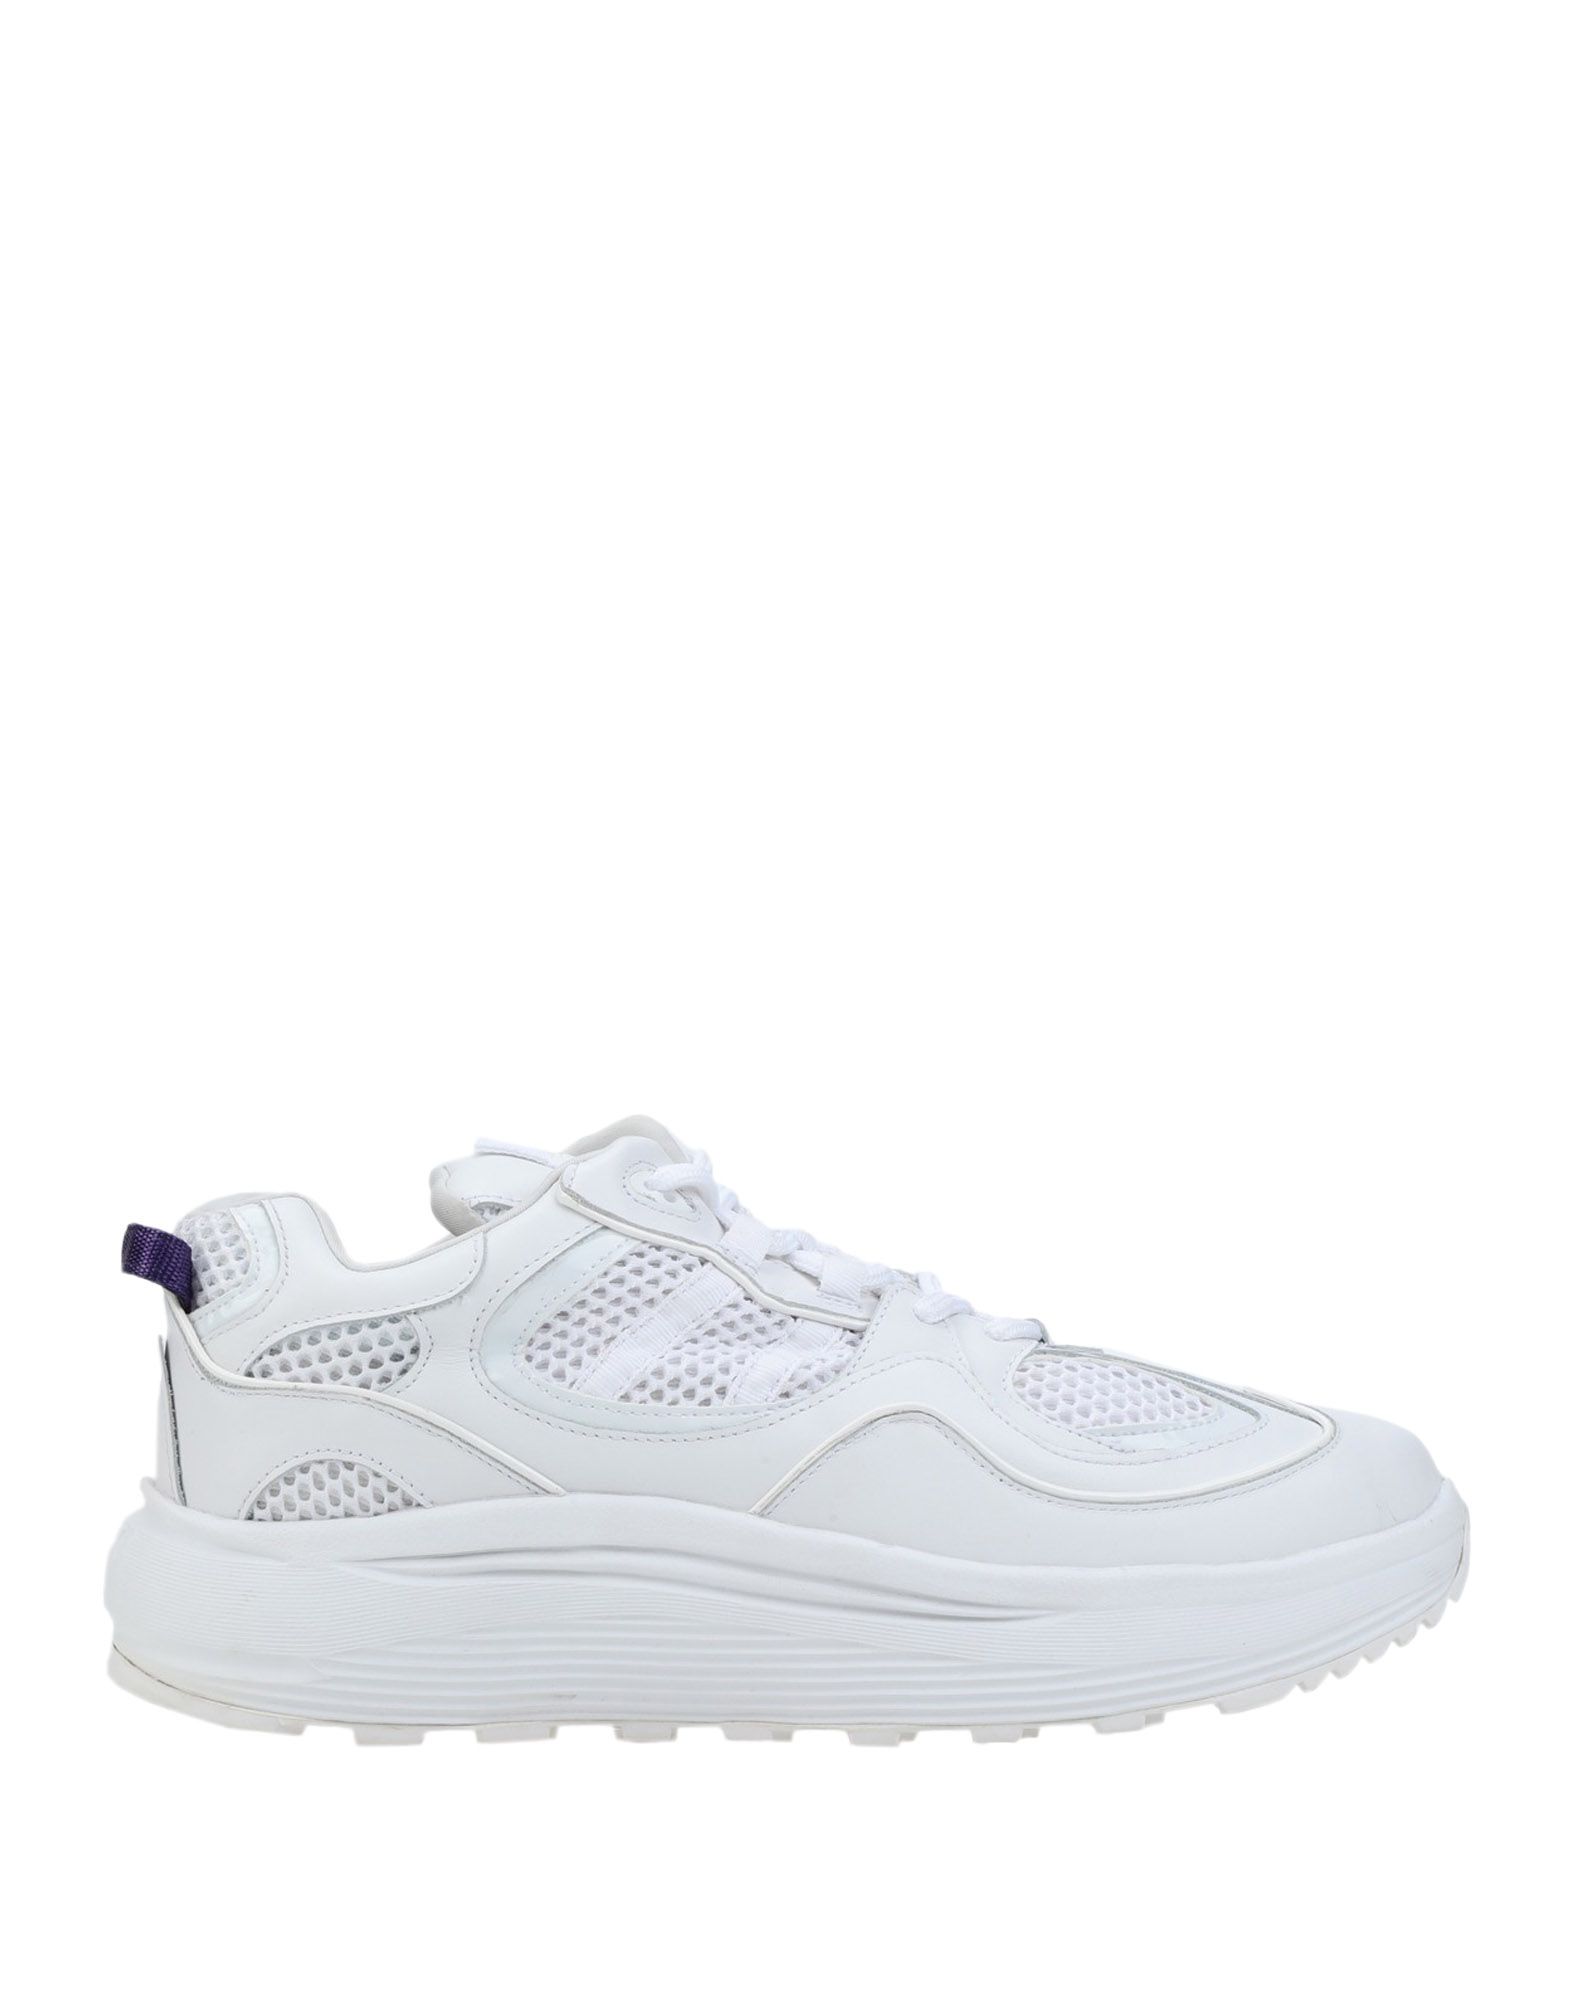 Shop Eytys Jet Turbo Man Sneakers White Size 9 Soft Leather, Textile Fibers, Polyurethane